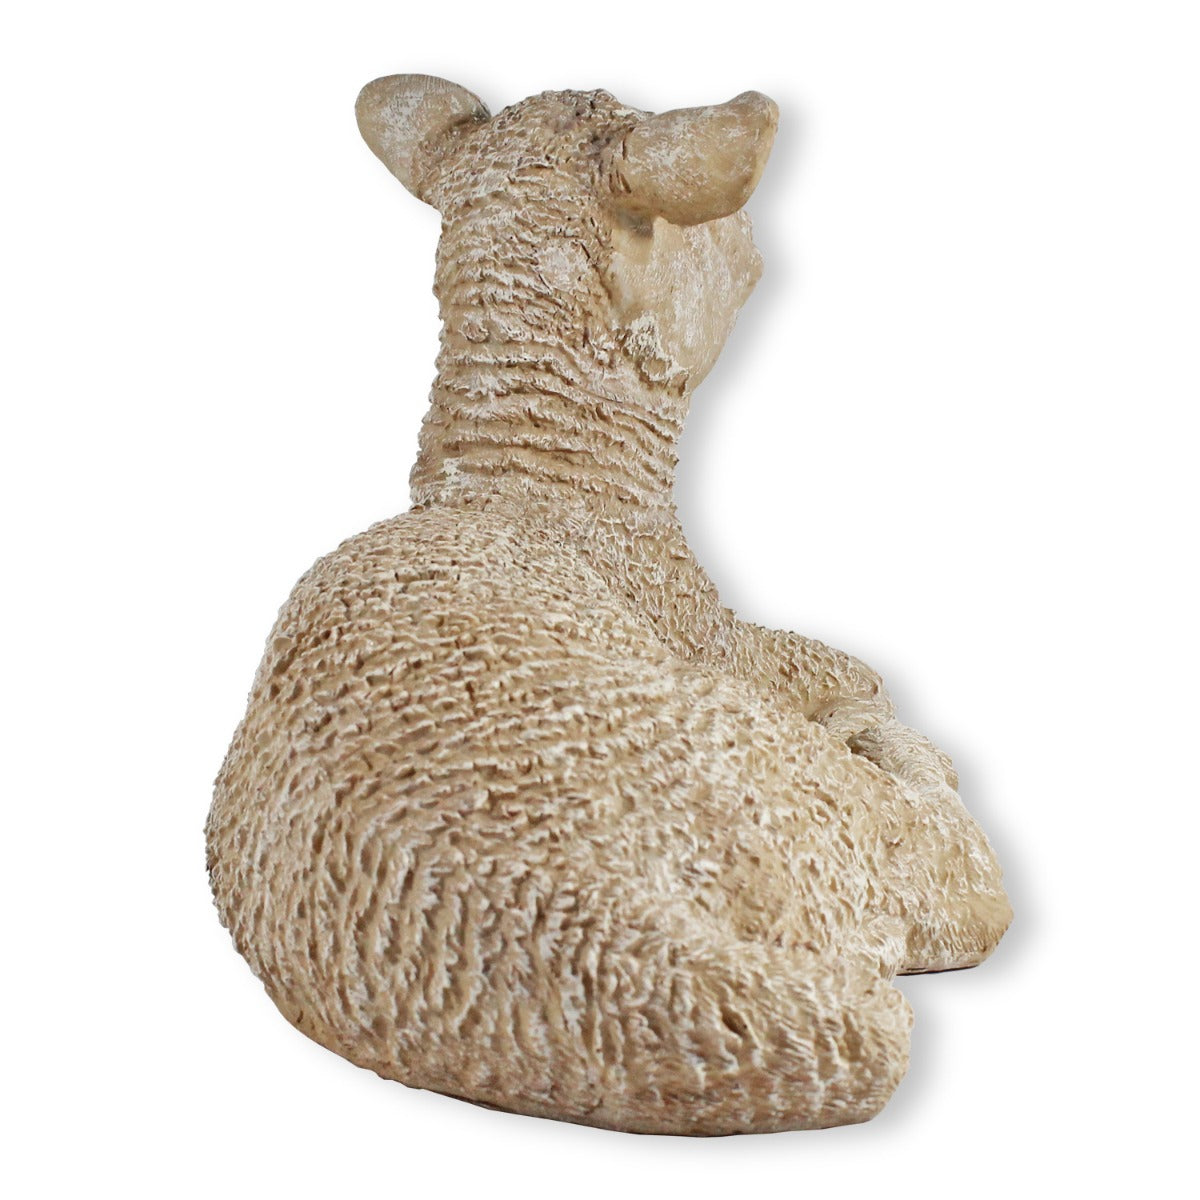 Gartenfigur Schaf Figur Nancy Schaf liegend Lamm Figur für den Garten